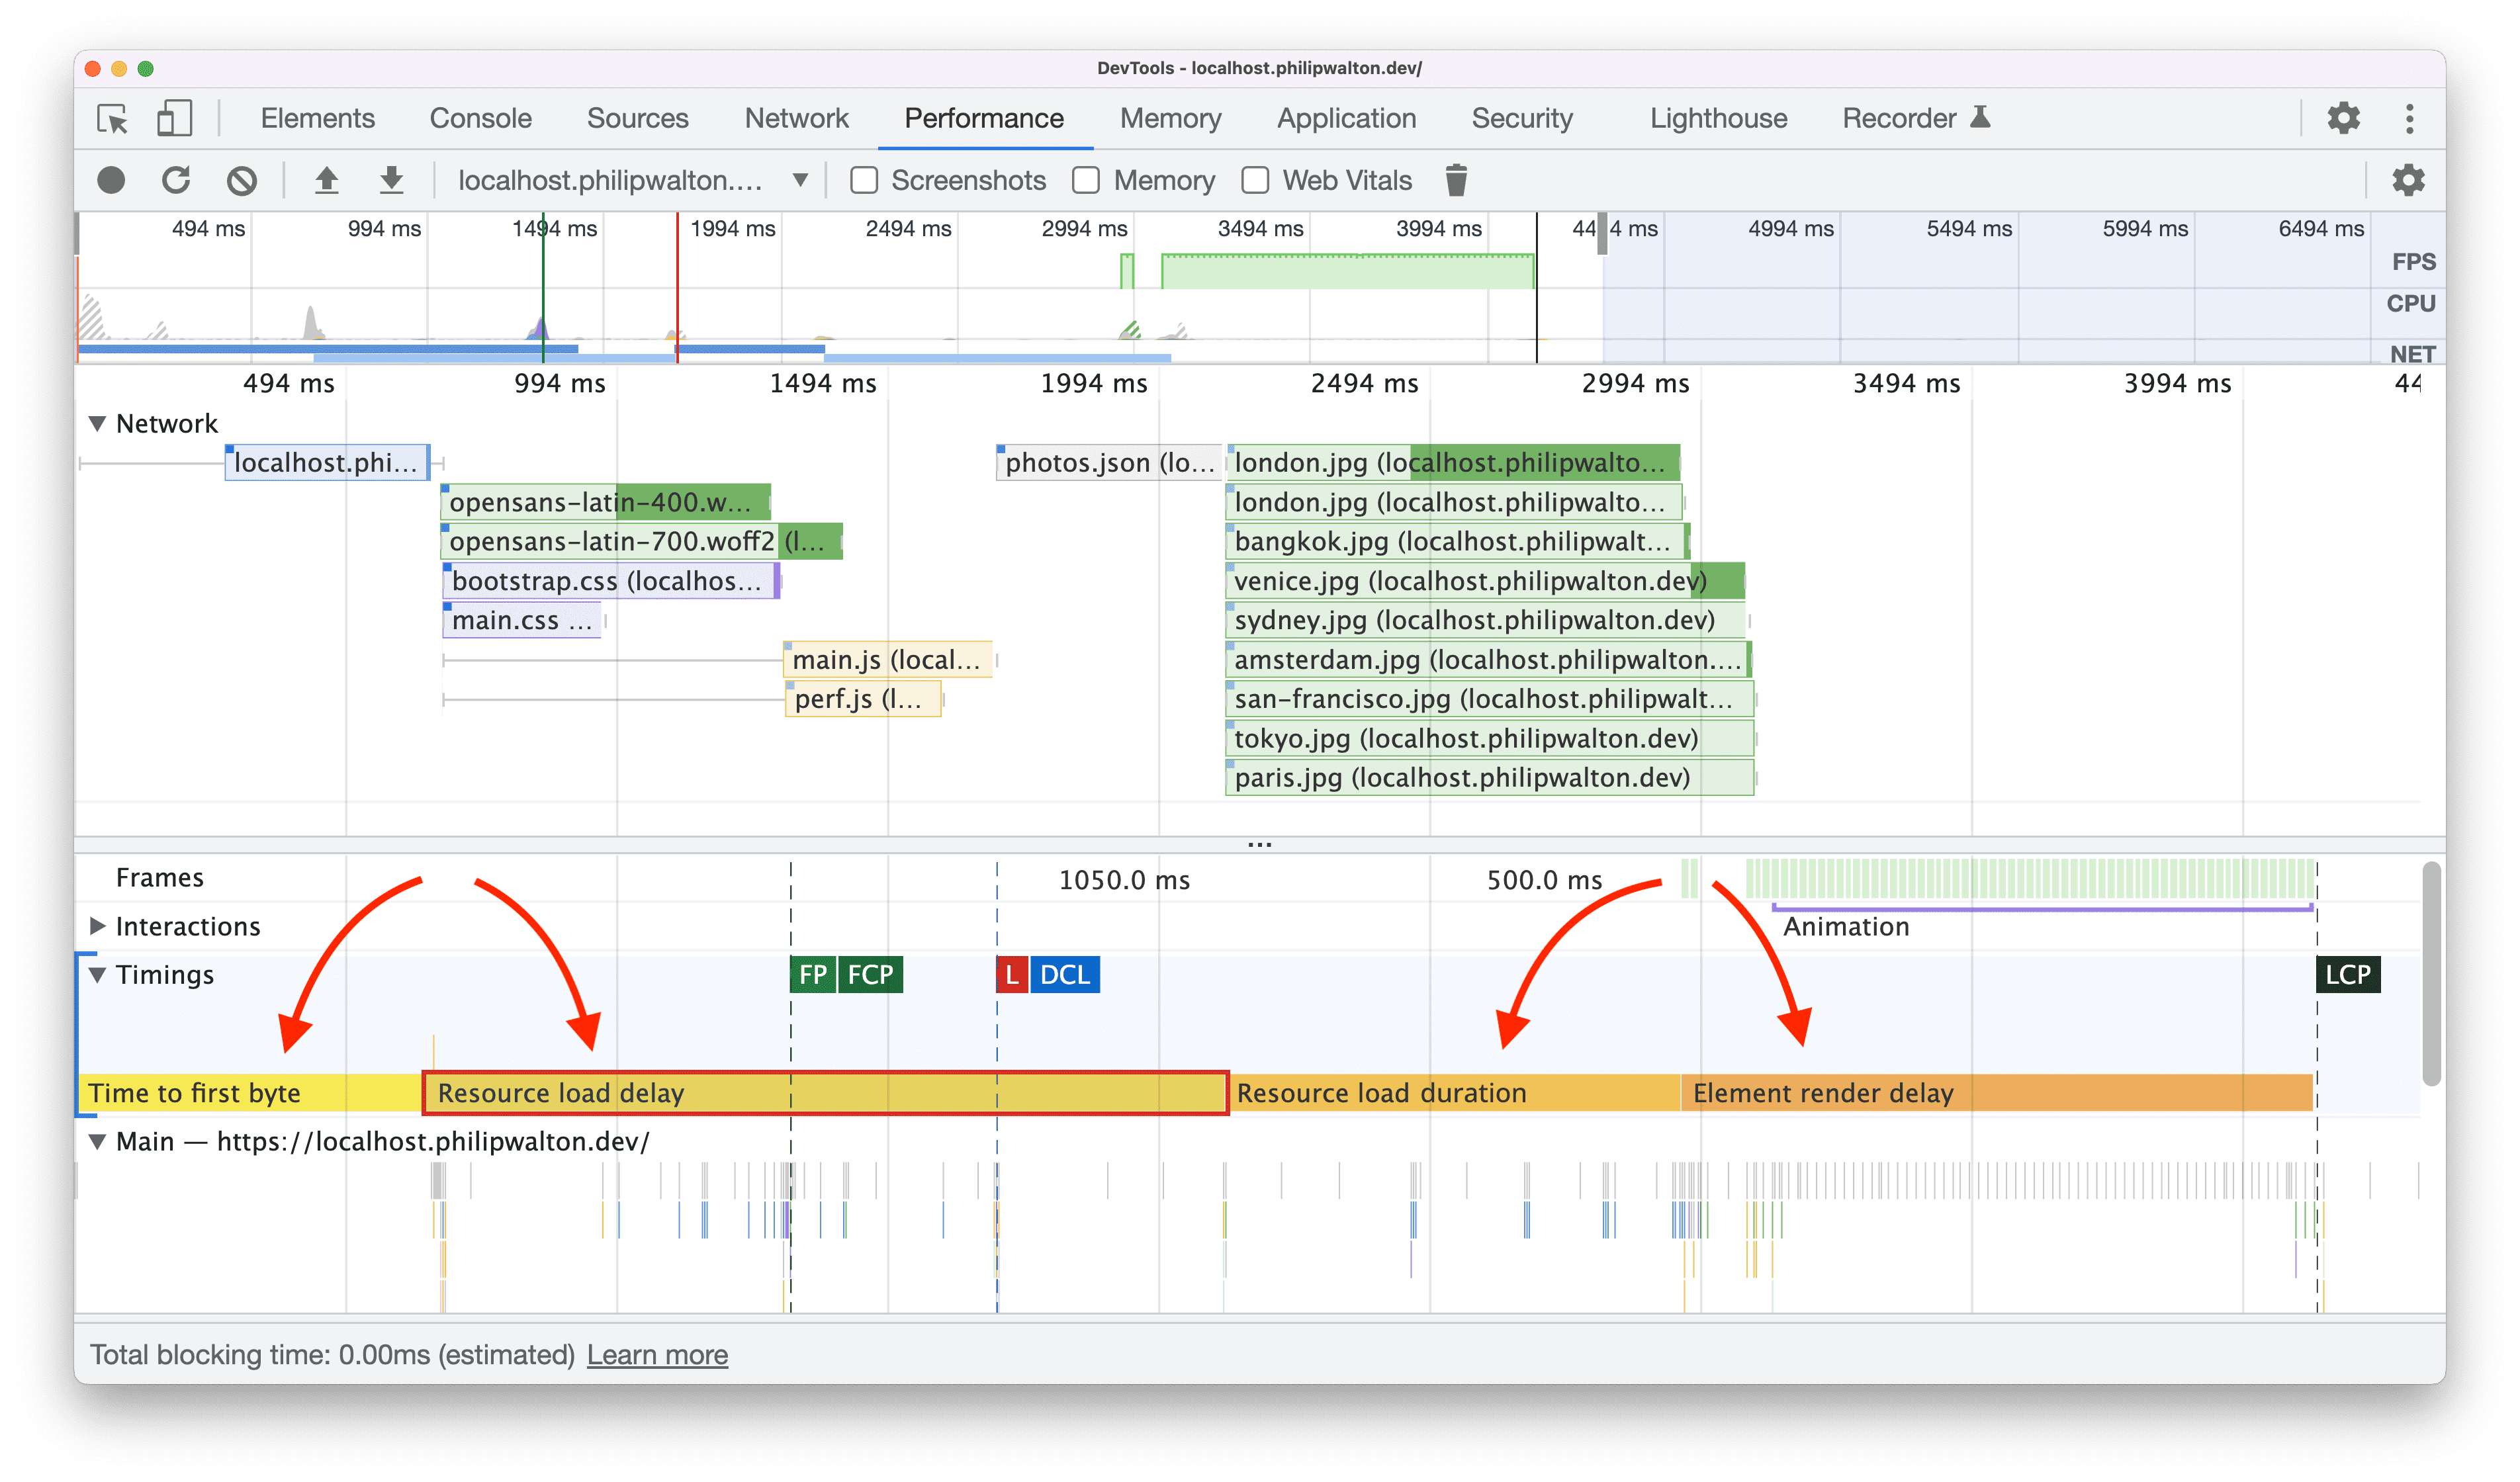 Pomiary czasu użytkownika dotyczące podkategorii LCP wizualizowanych w Narzędziach deweloperskich w Chrome